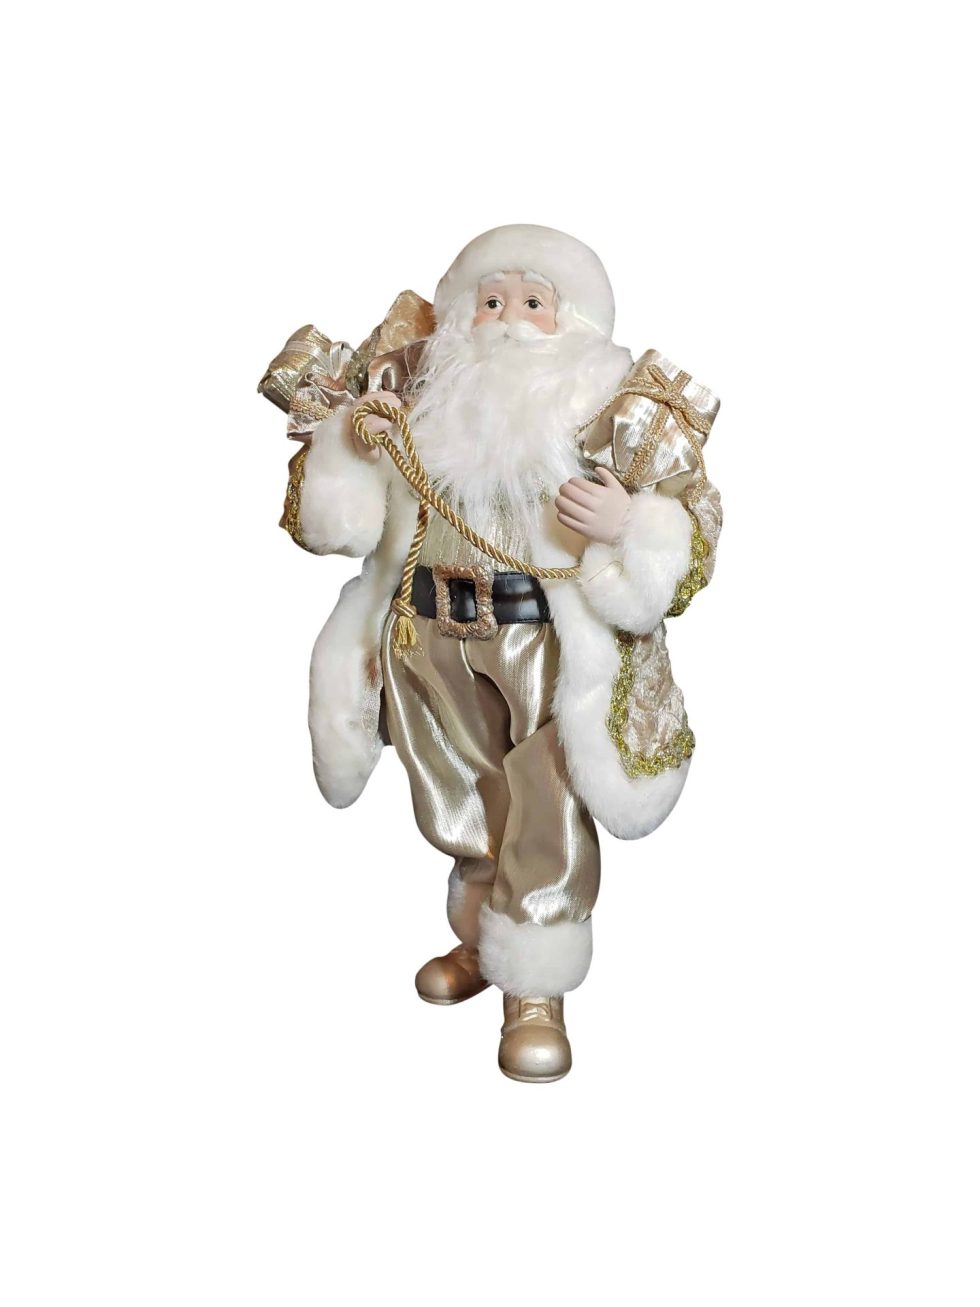 Lot #14682 – Ornate Santa Claus With Gift Bag Christmas Holiday Decor Figure Art Christmas